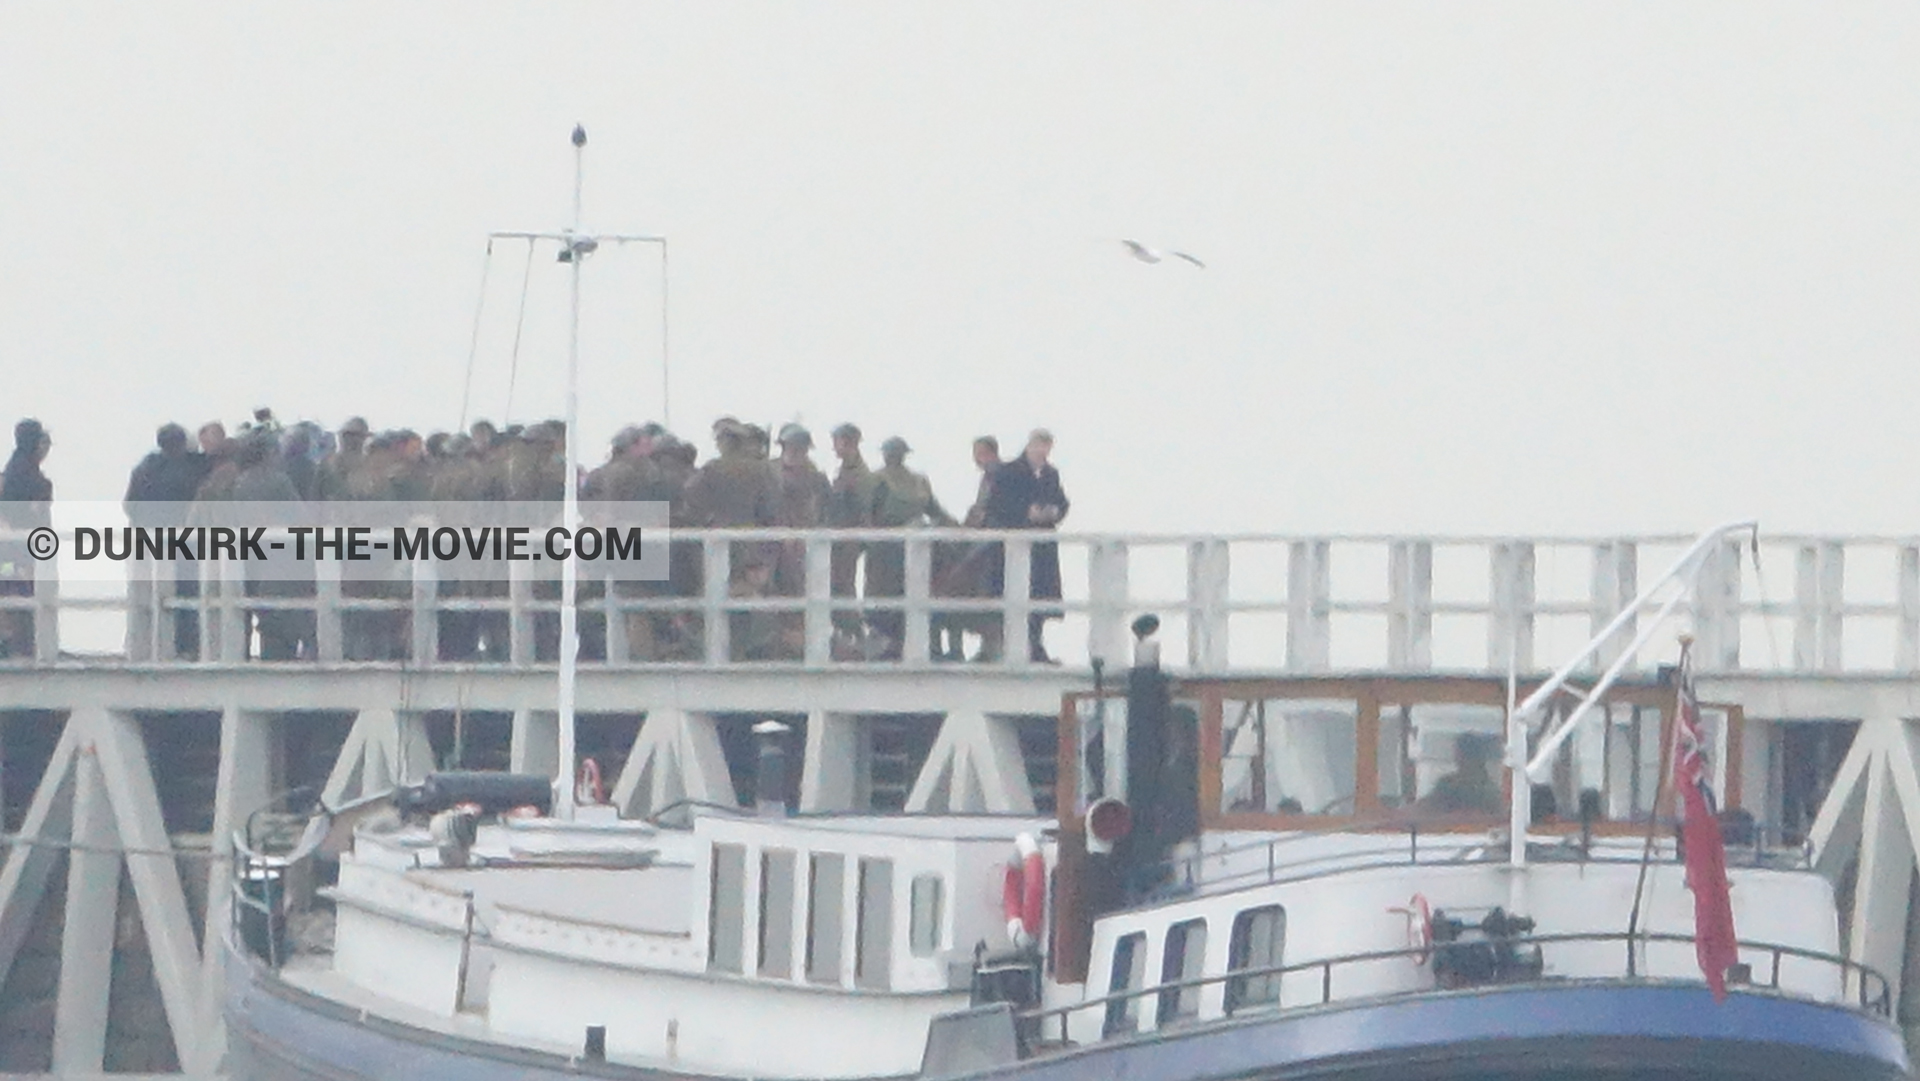 Photo avec bateau, ciel gris, figurants, jetée EST,  des dessous du Film Dunkerque de Nolan